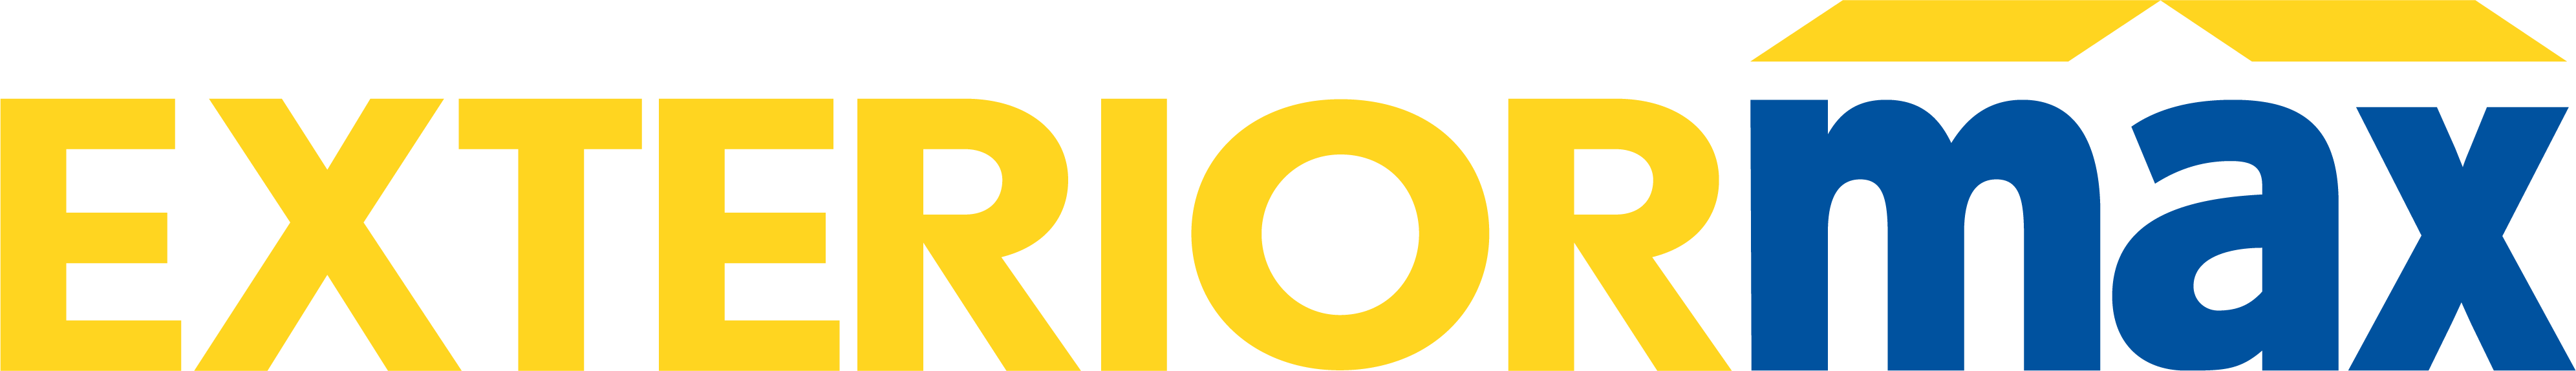 Exteriormax, LLC Logo